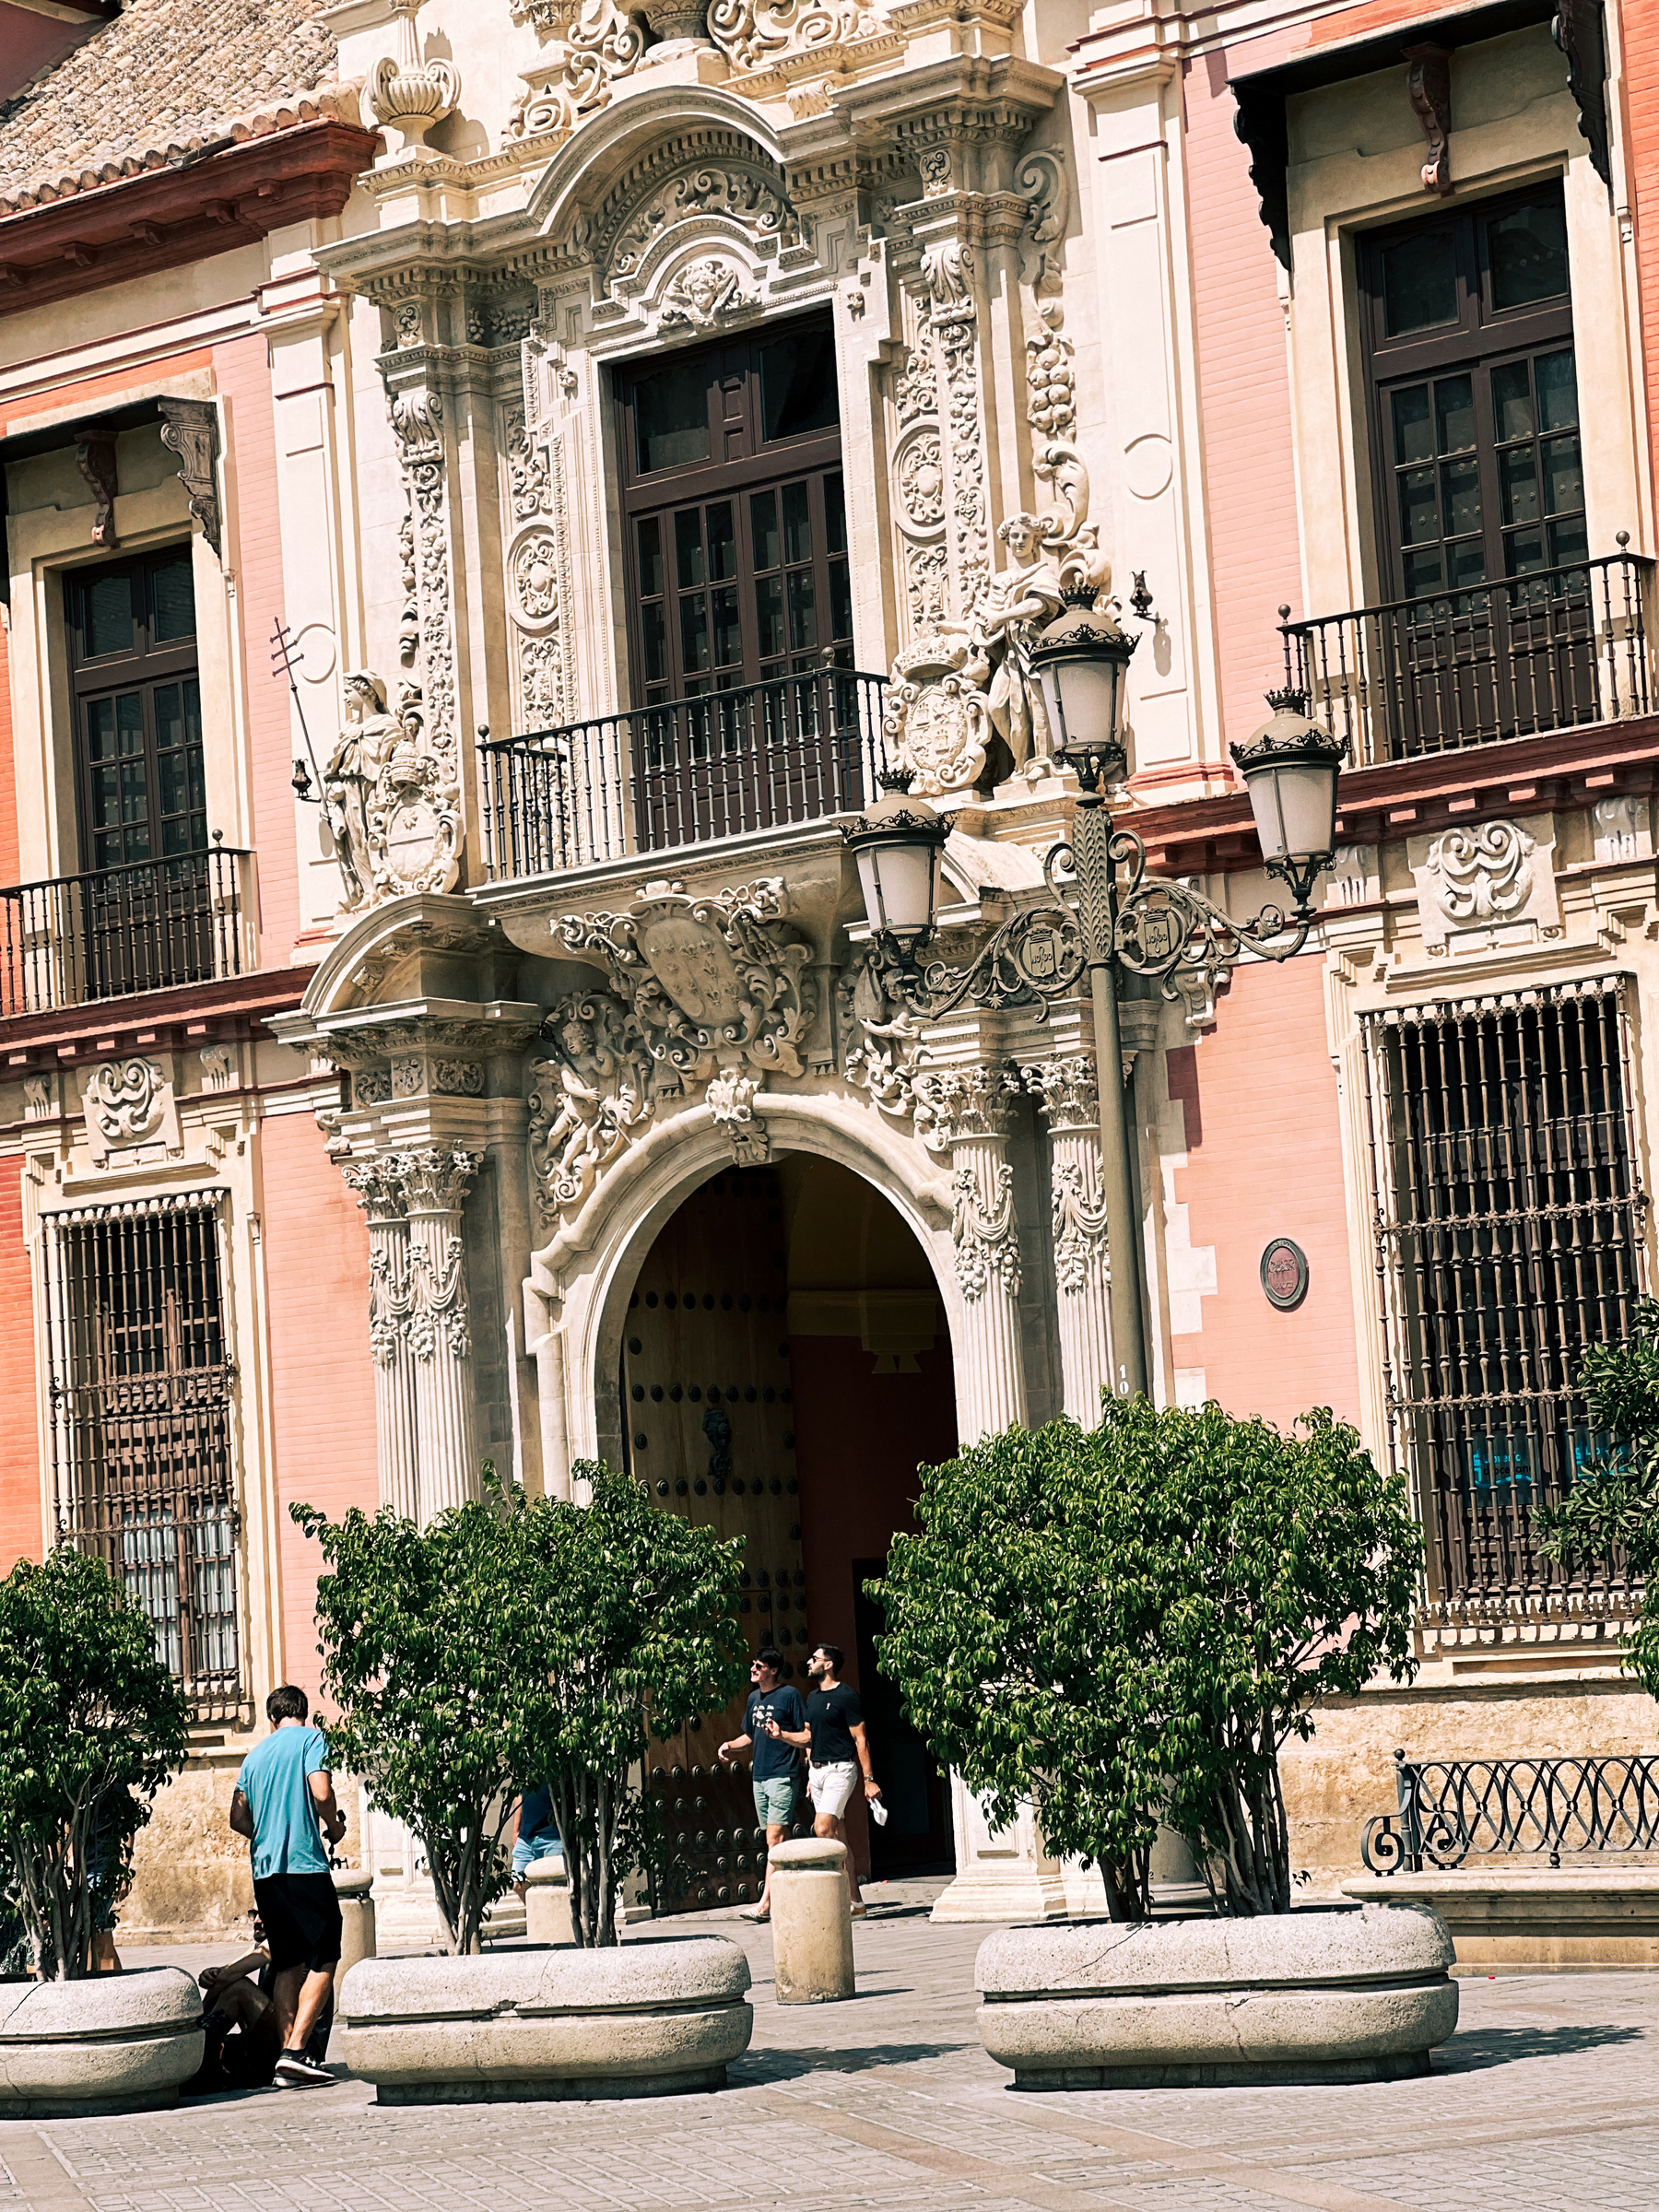 A classic Sevilla building. 